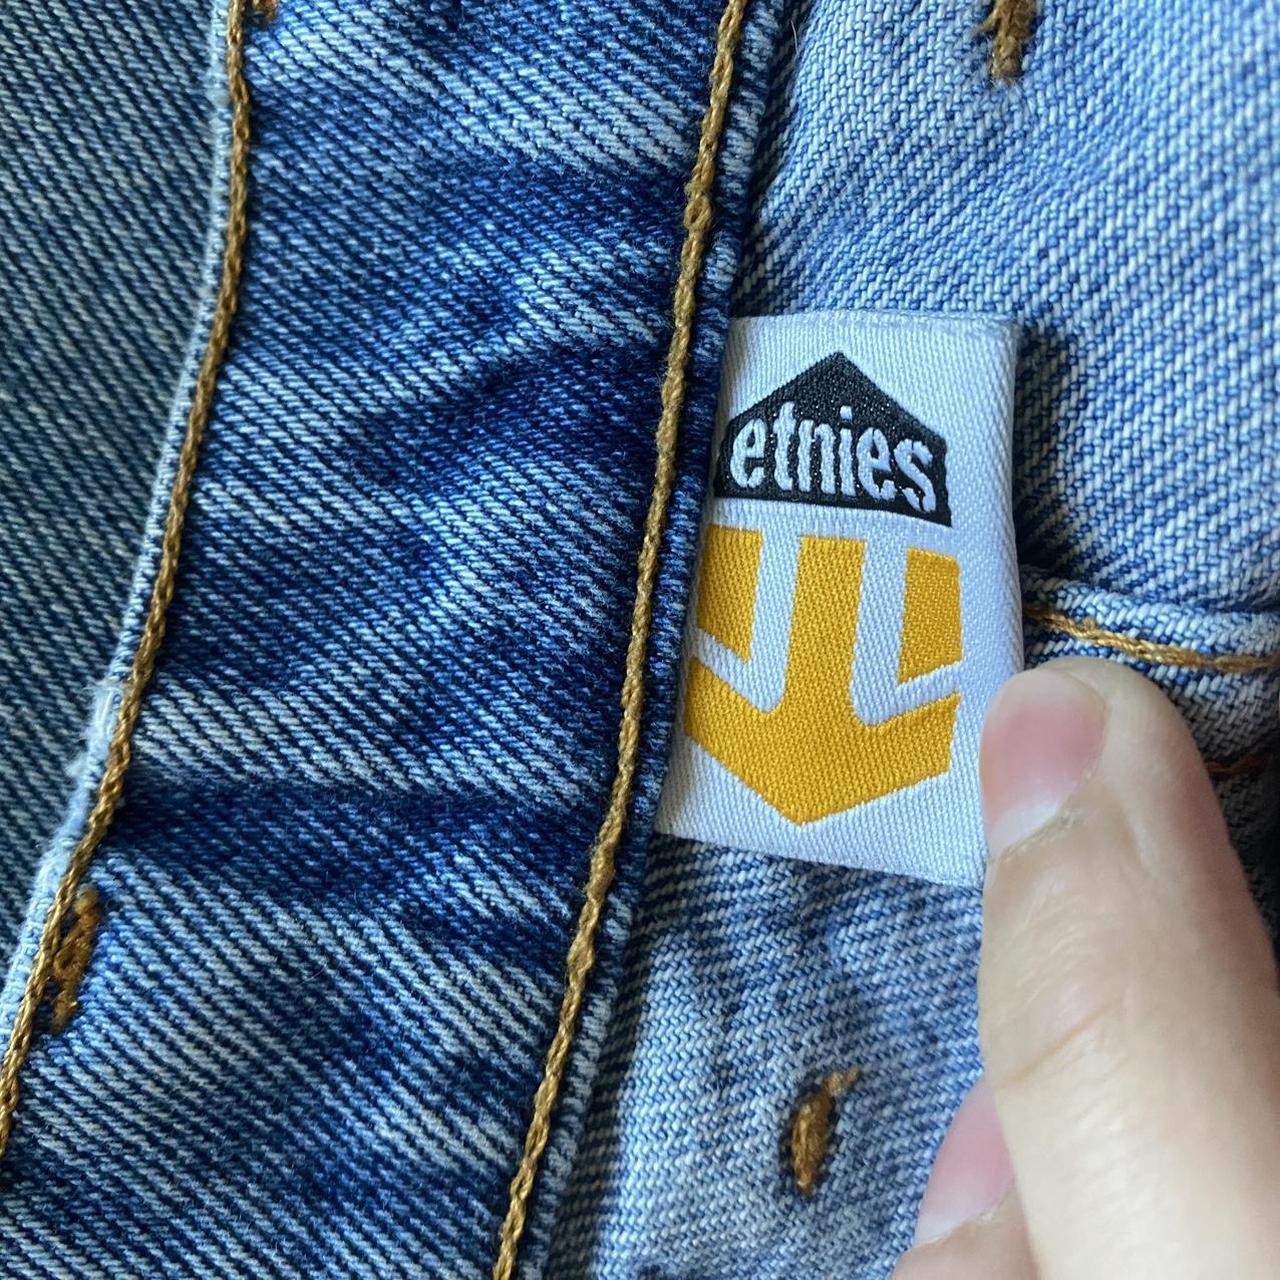 Etnies baggy blue jeans Size 34/32 Cut an... - Depop